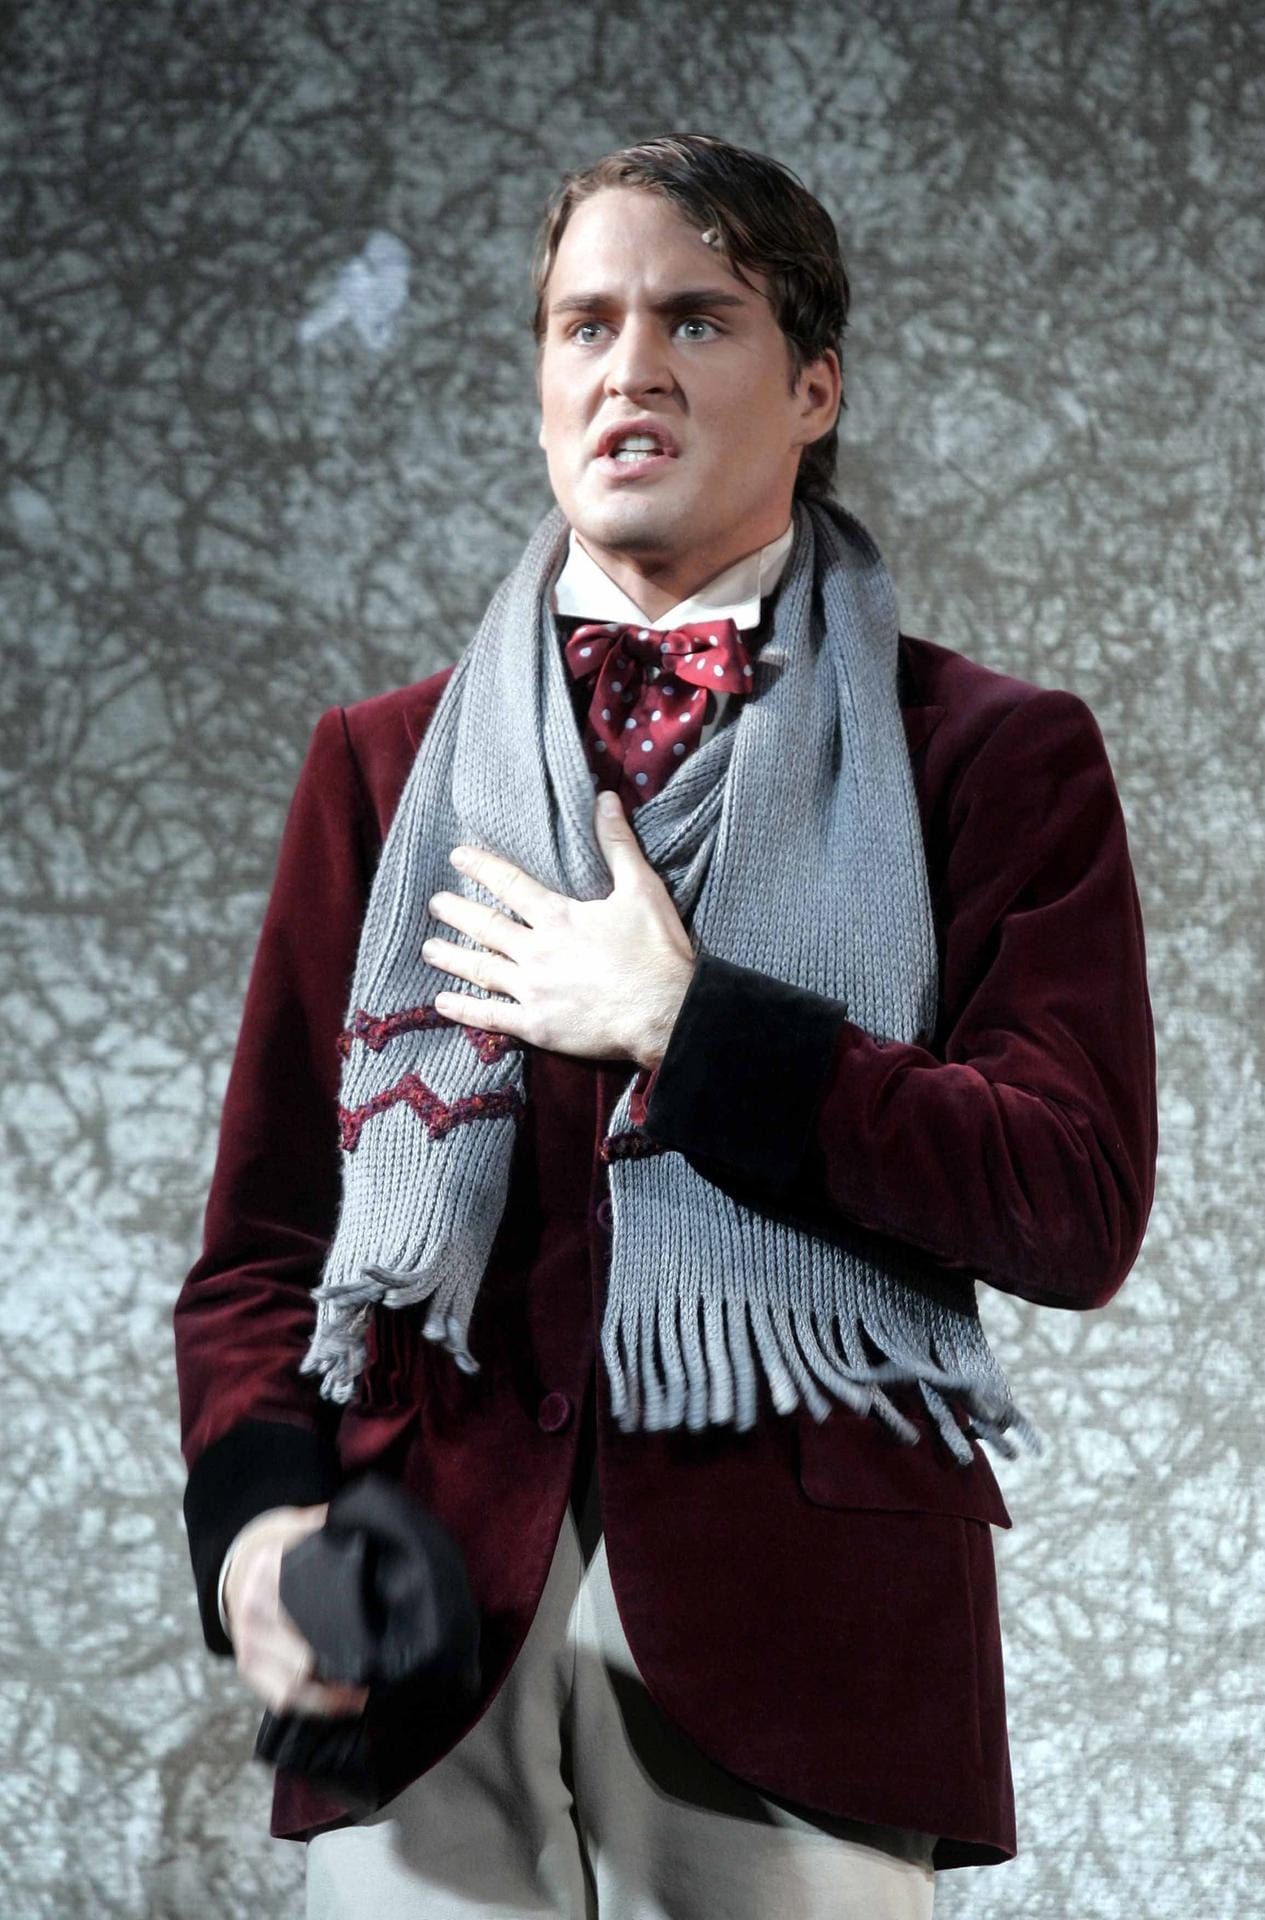 Klaws ergattert wenig später eine Rolle in Roman Polanskis Musical "Tanz der Vampire". Bis 2008 hat er das Engagement als "Alfred".